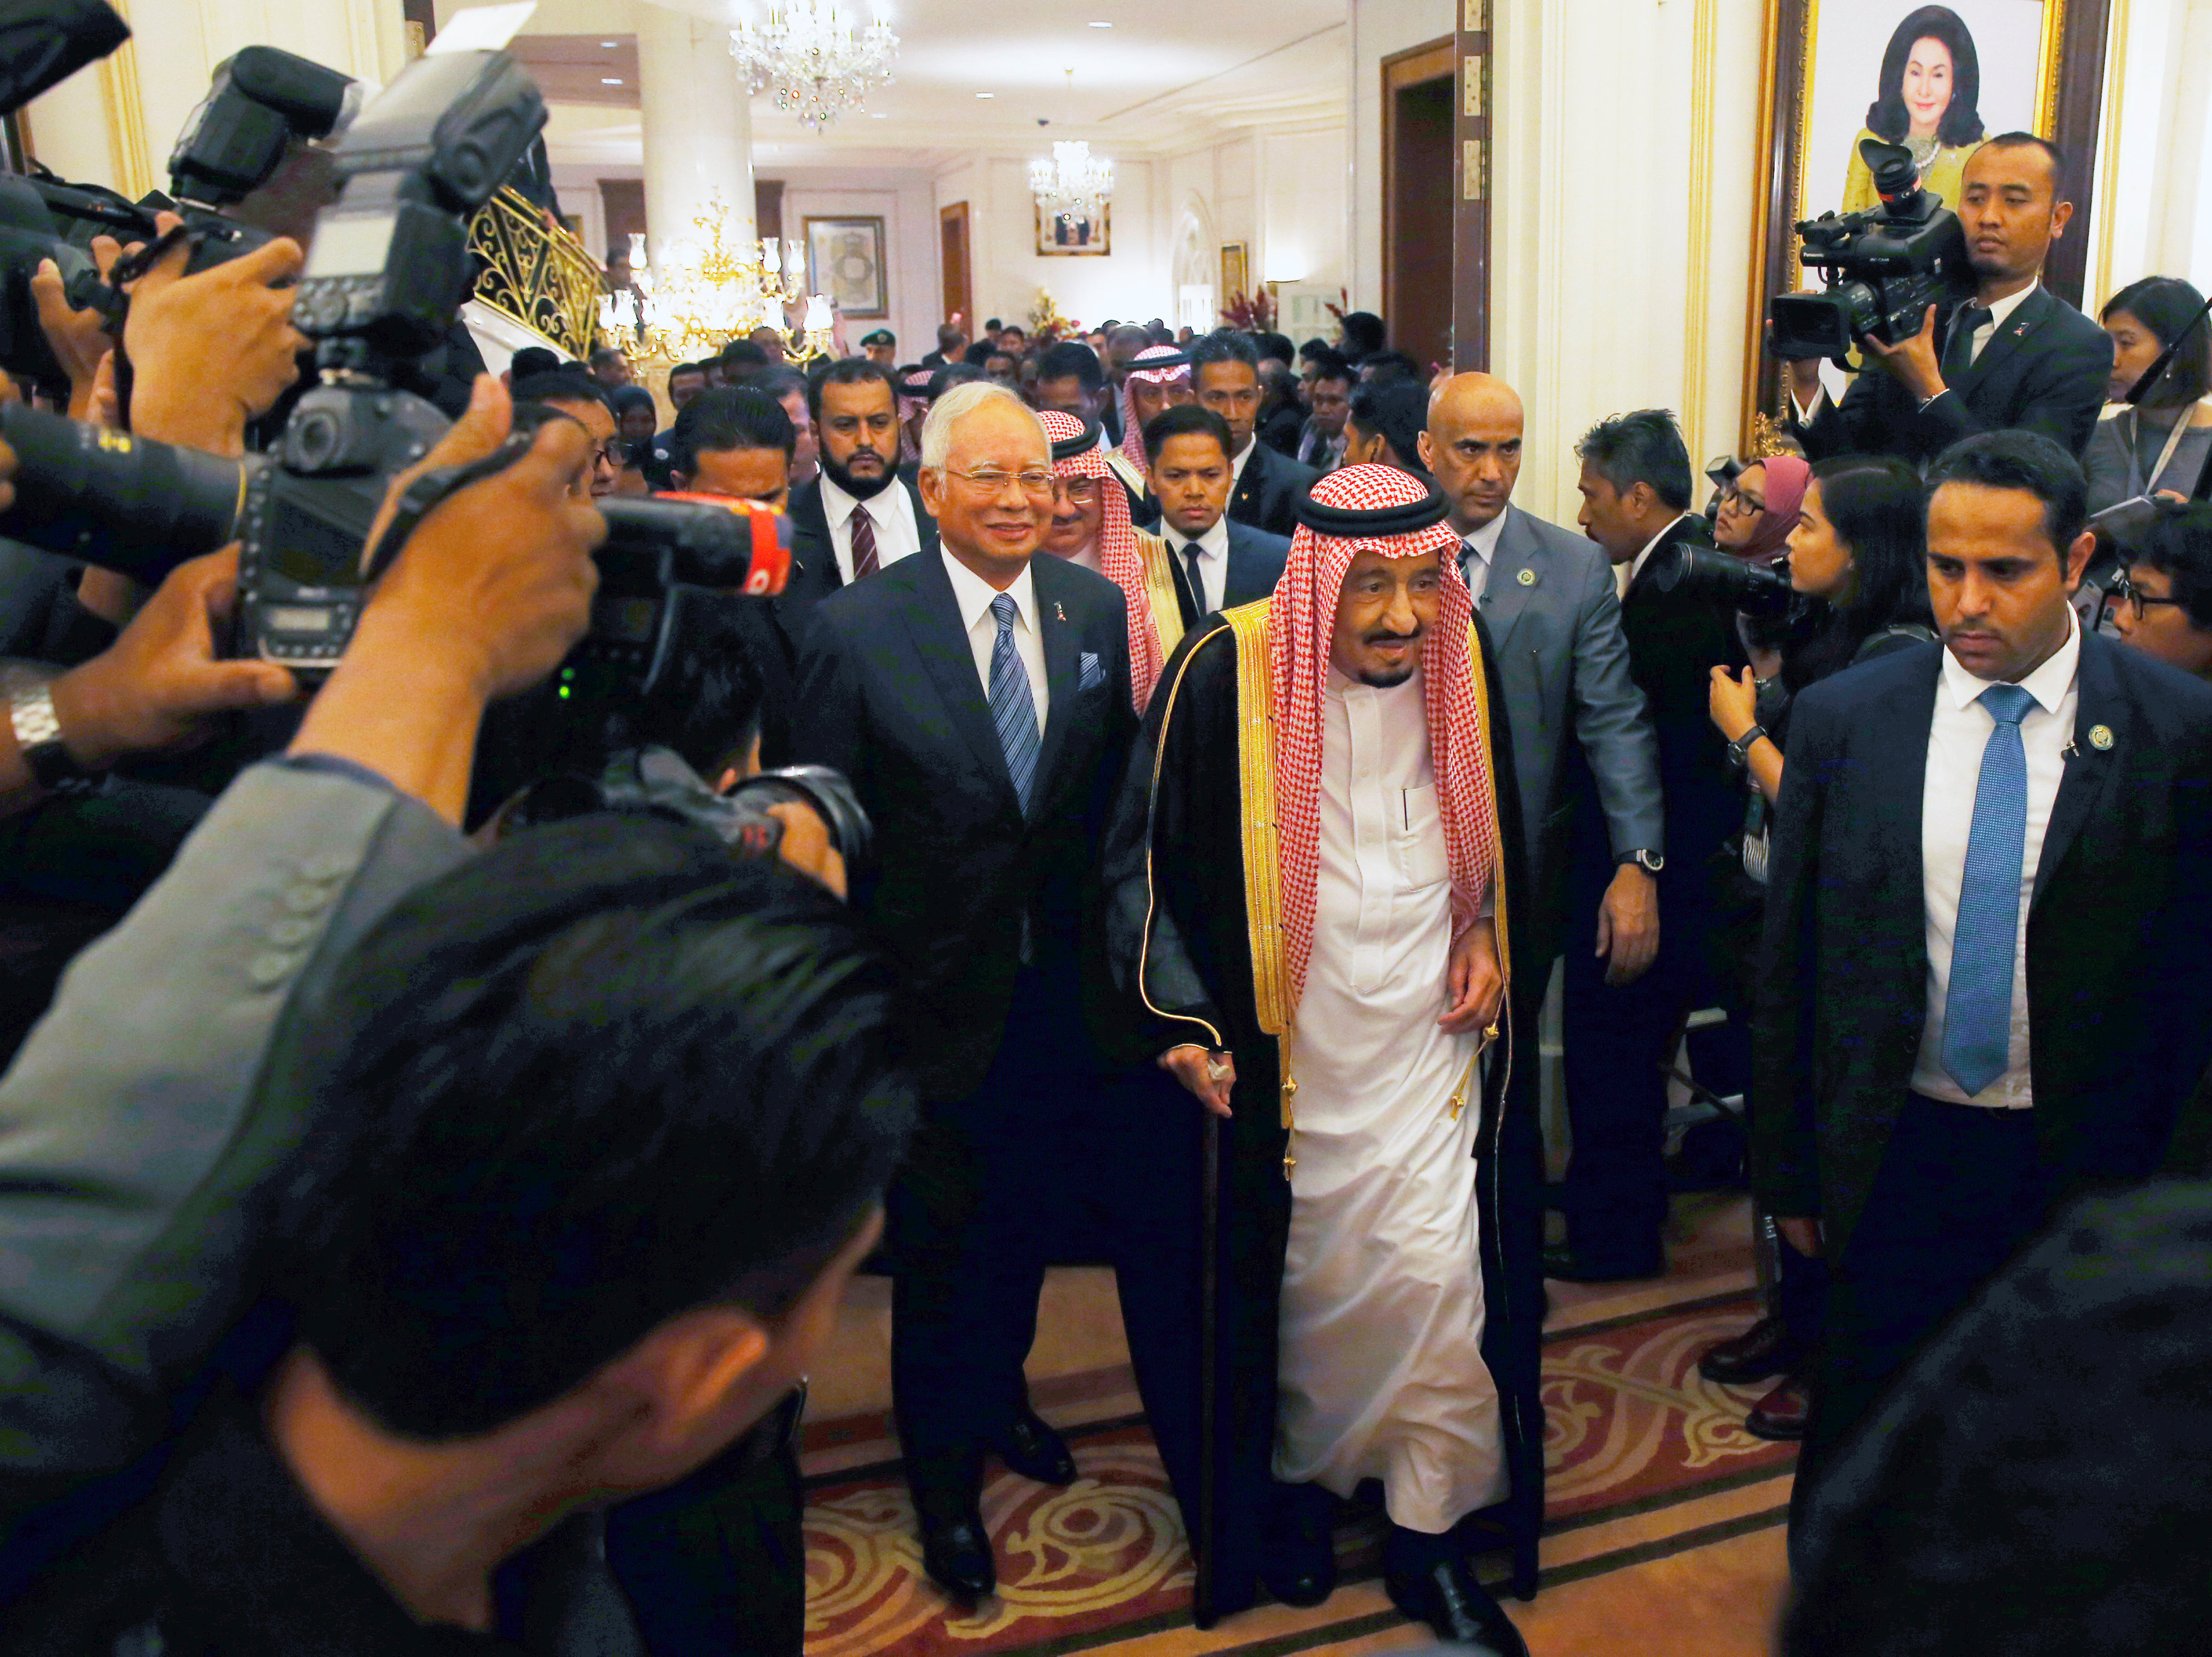 وسائل الإعلام تلتف حول الملك سلمان خلال زيارته لماليزيا وبرفقته رئيس الوزراء الماليزى